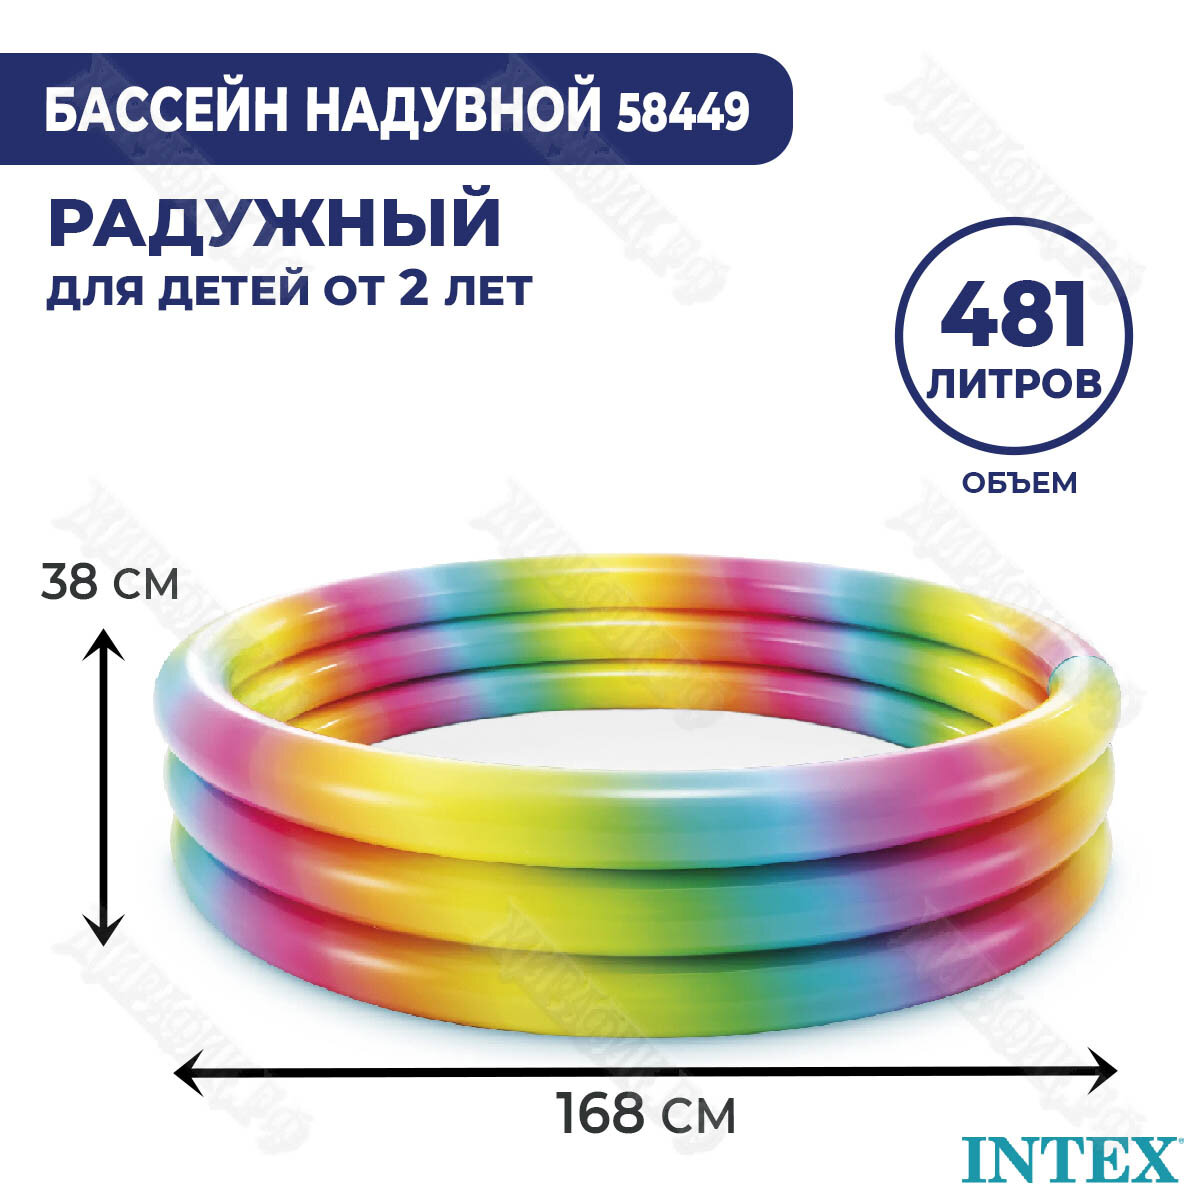 Детский надувной бассейн Intex Забавы 58449